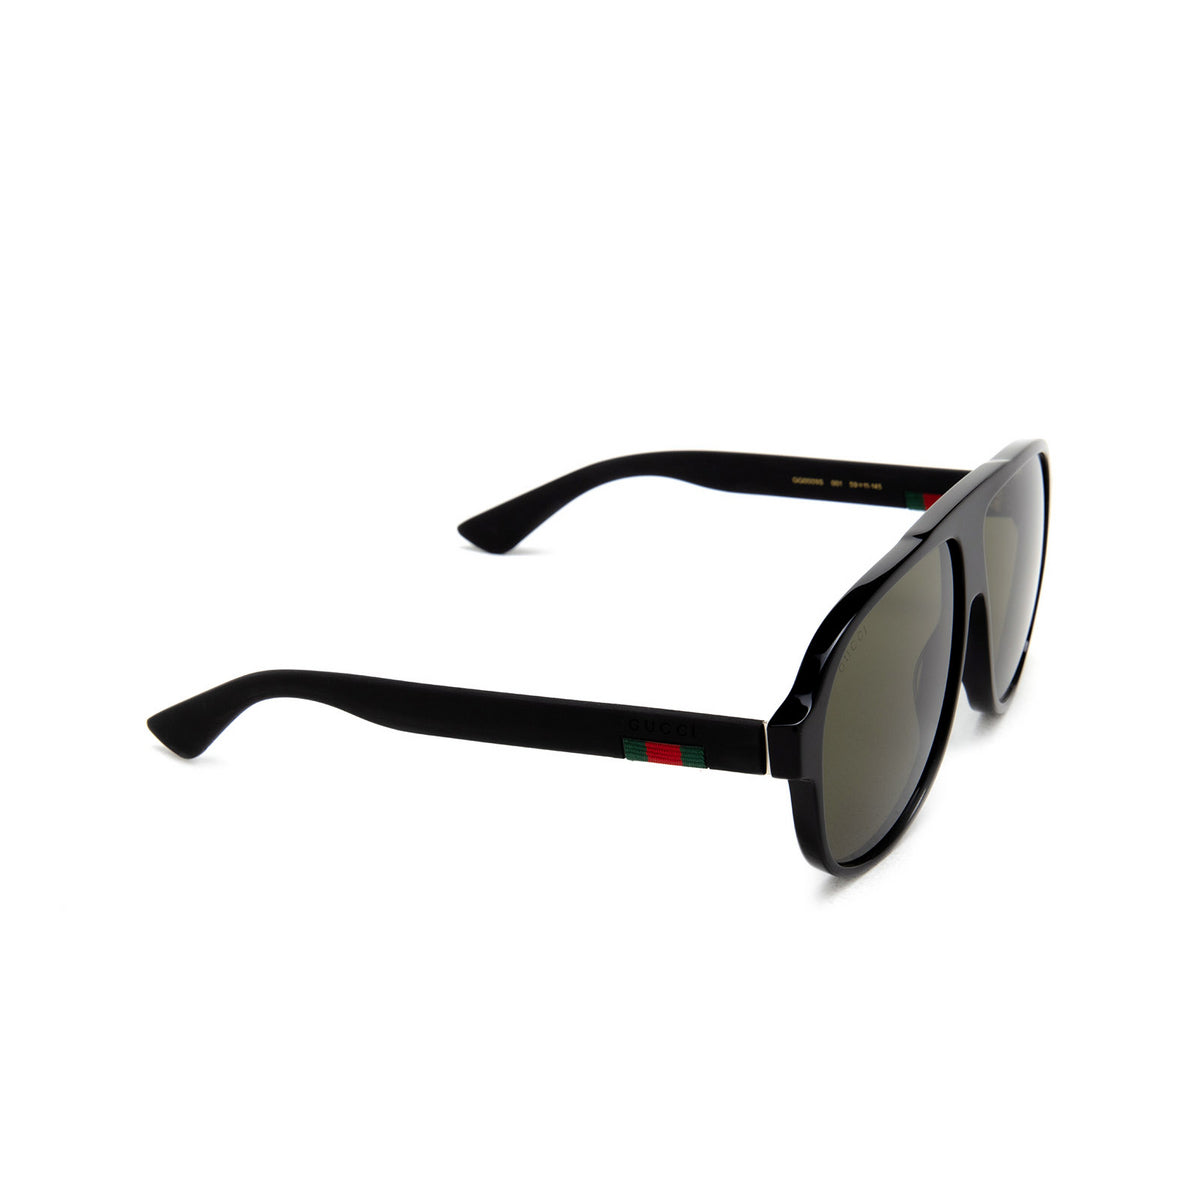 Gucci GG0009S-001 59mm New Sunglasses